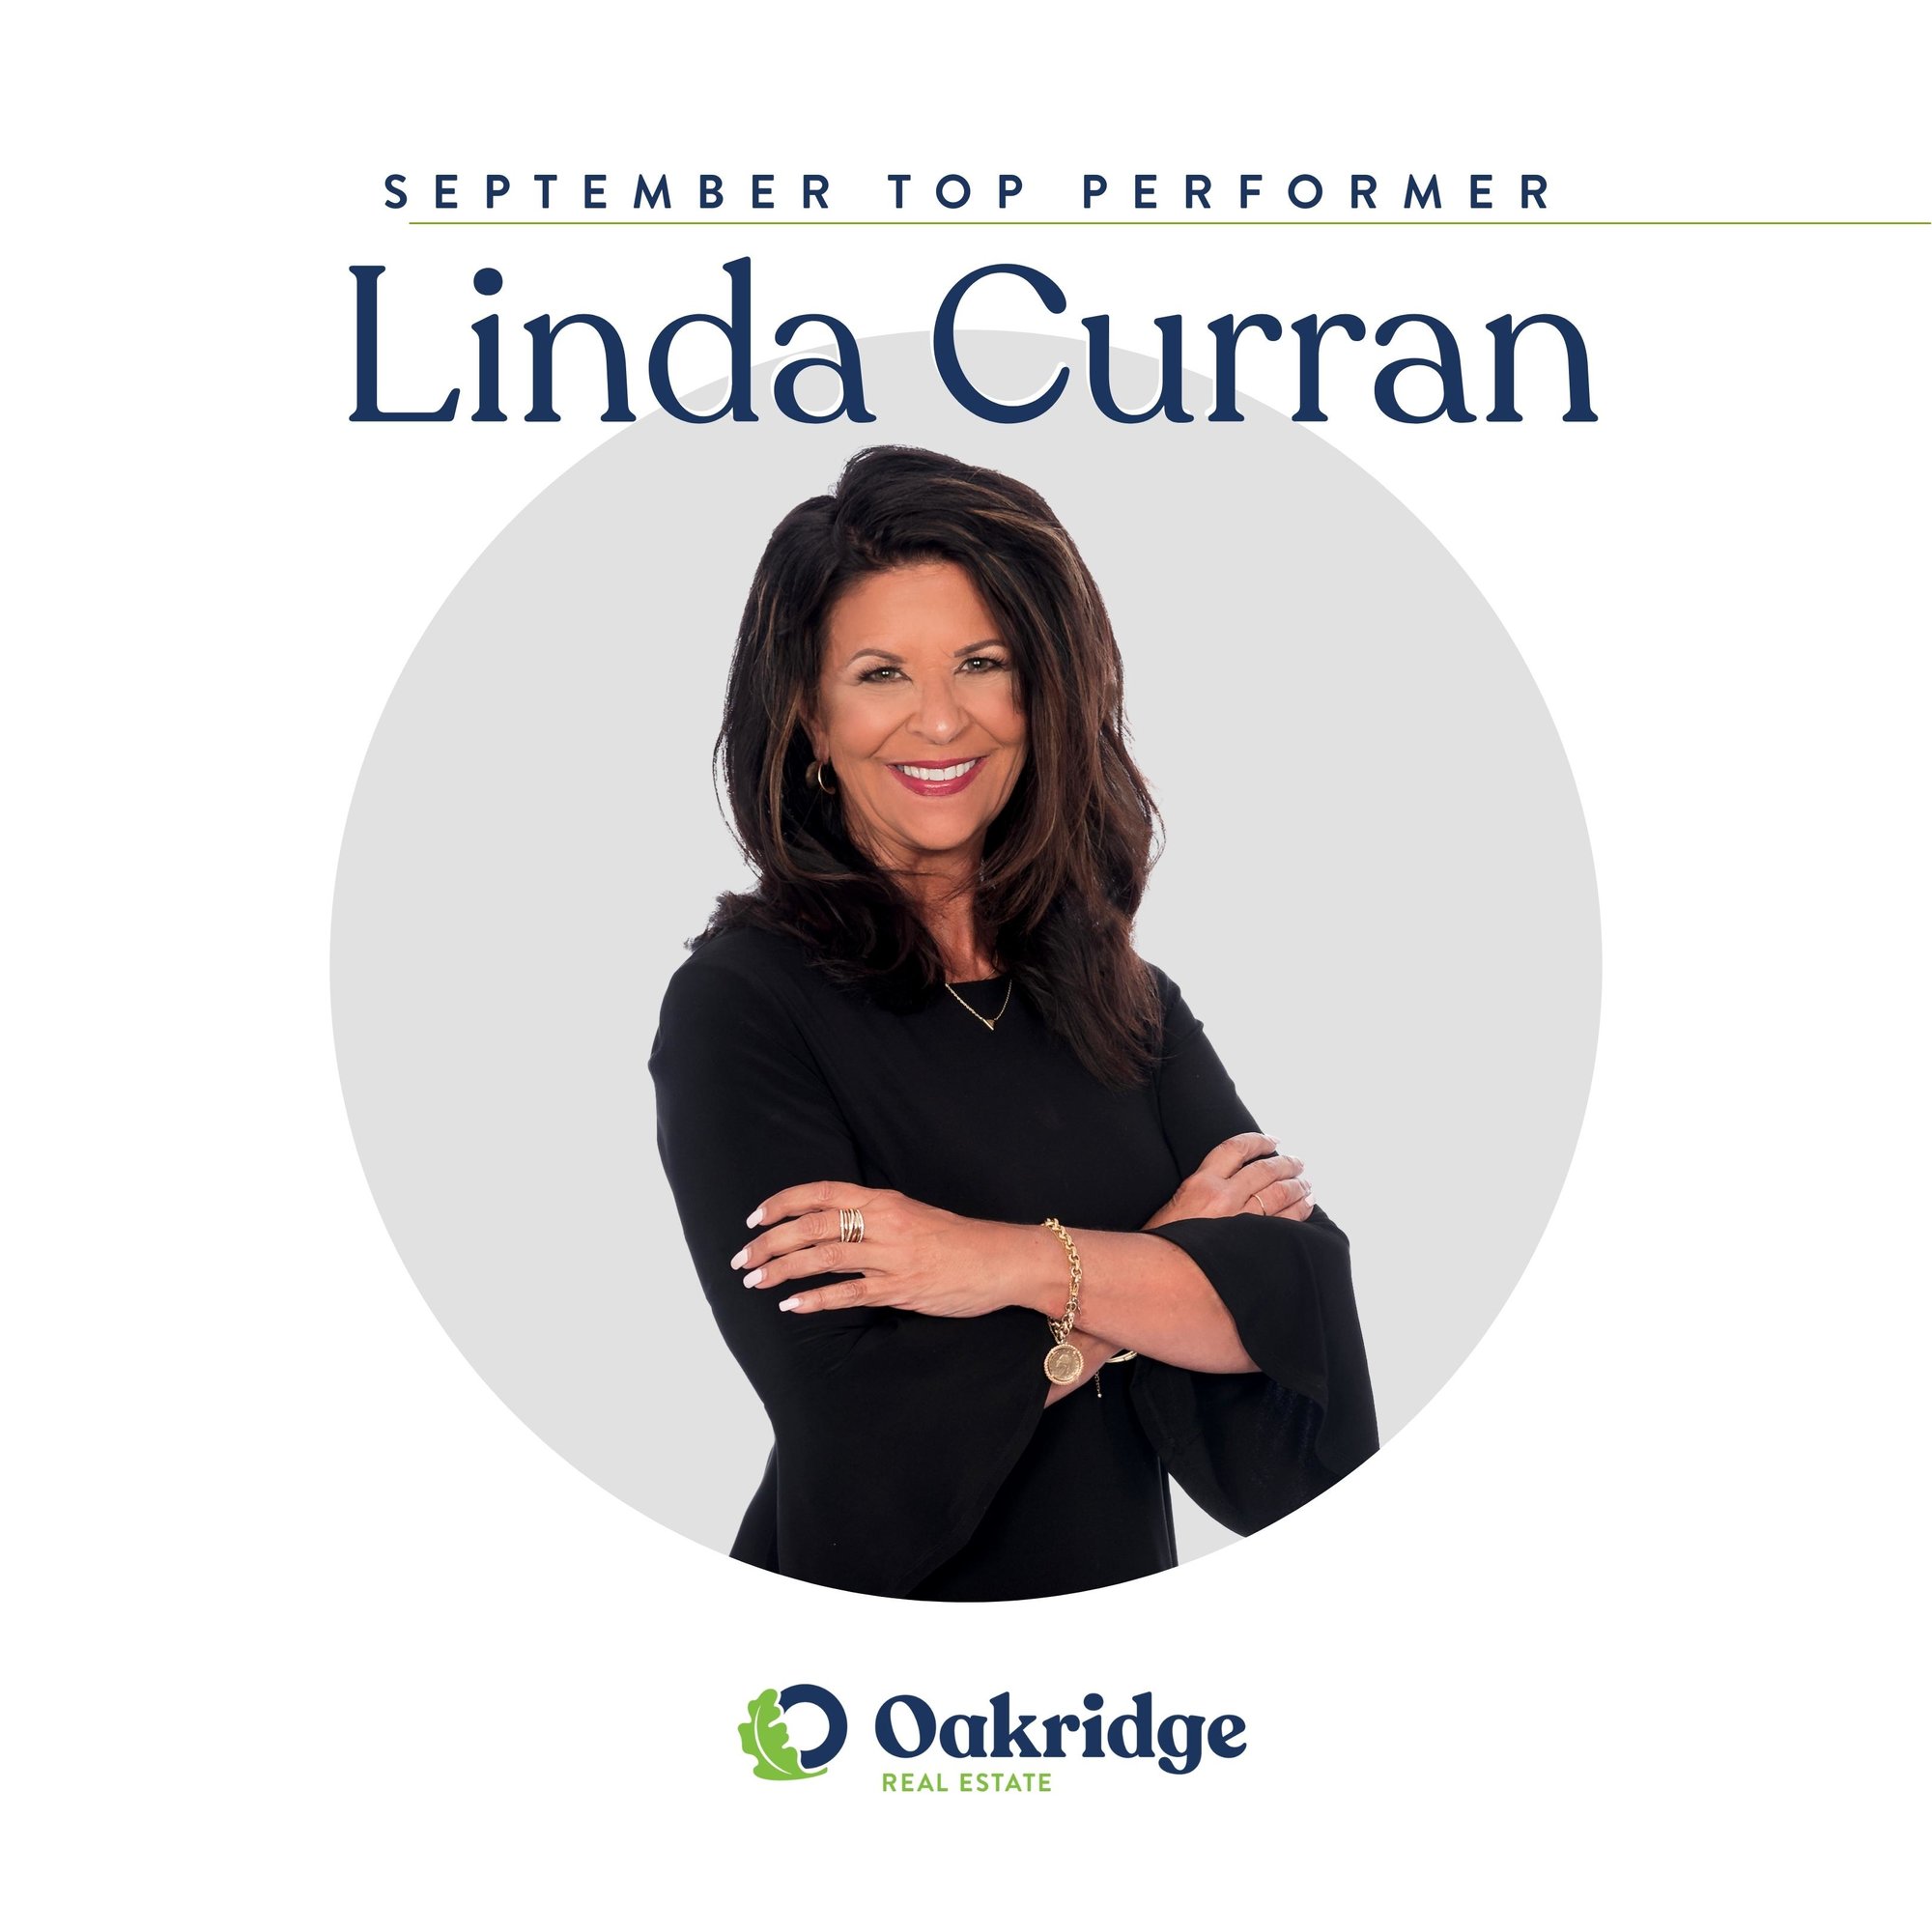 Linda Curran September Top Performer | Oakridge Real Estate